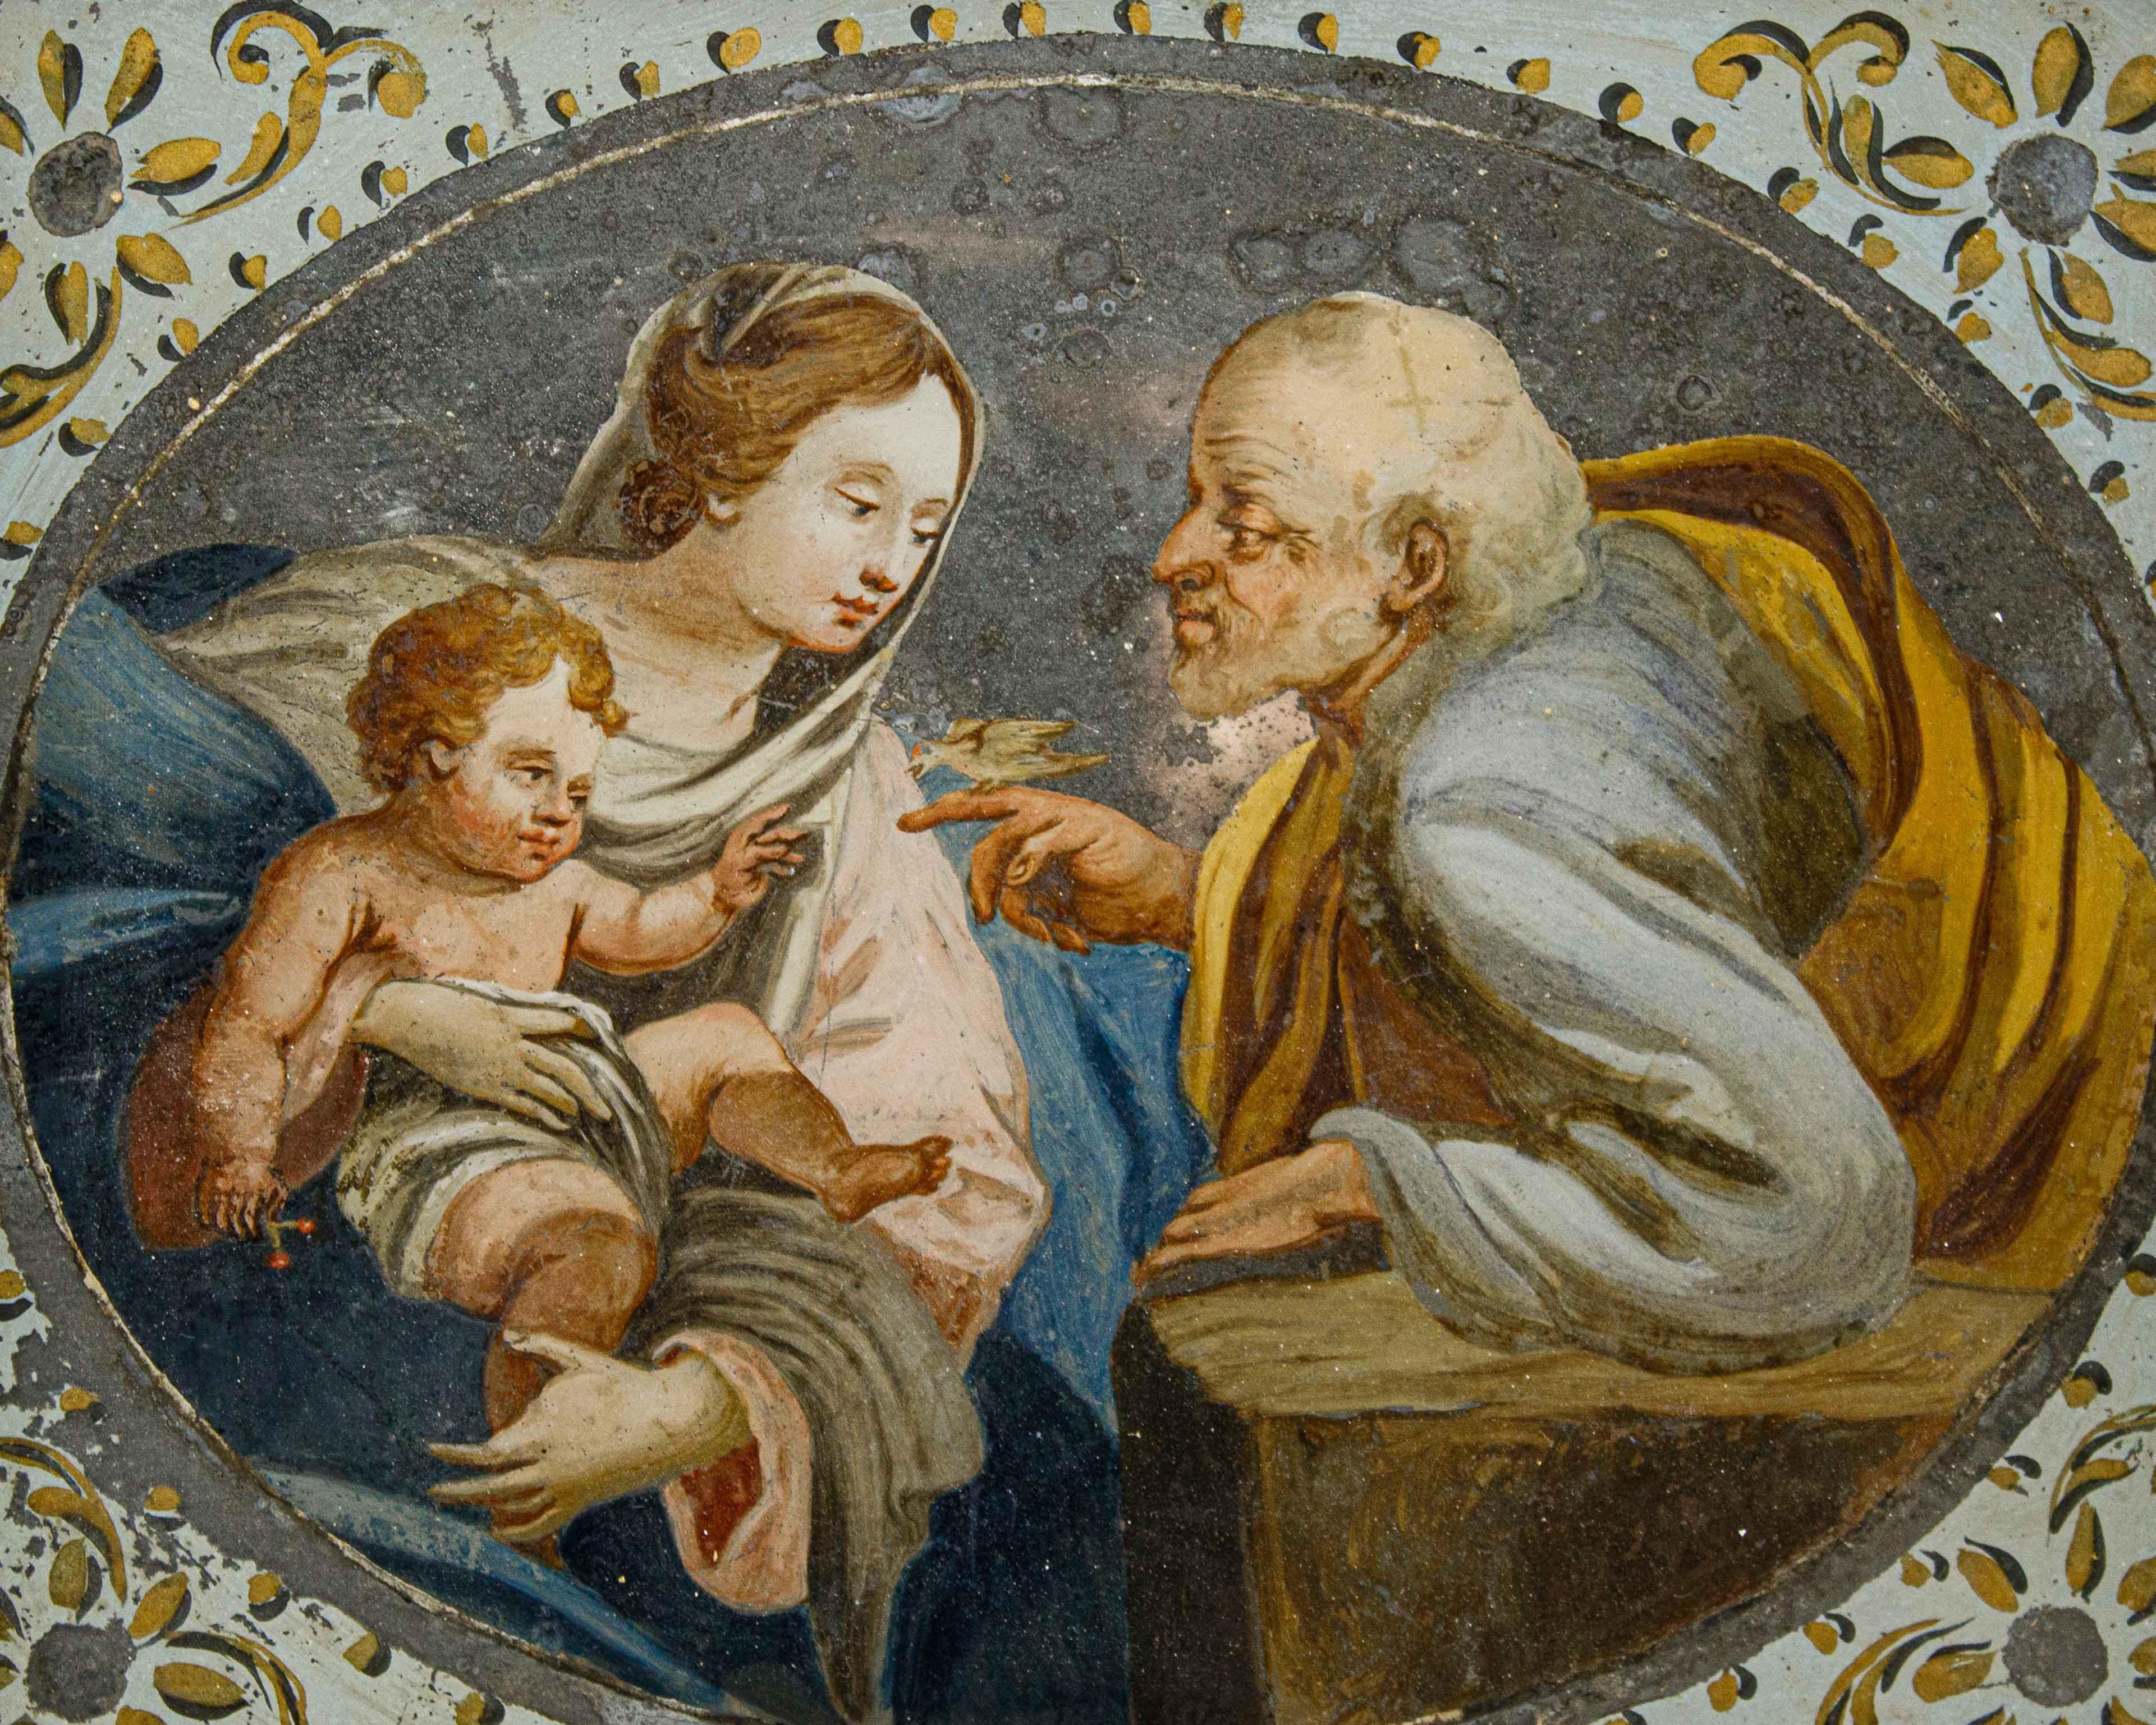 Anhänger von Simon Vouet (Paris, 1590 - 1649)

Die Heilige Familie mit Vogel

Öl auf Glas, cm 20,5 x 23,5; mit Rahmen cm 27,5 x 29,5

Das untersuchte kleine, auf Glas gemalte Gemälde, das in seinen Dimensionen typisch für die private Verehrung ist,